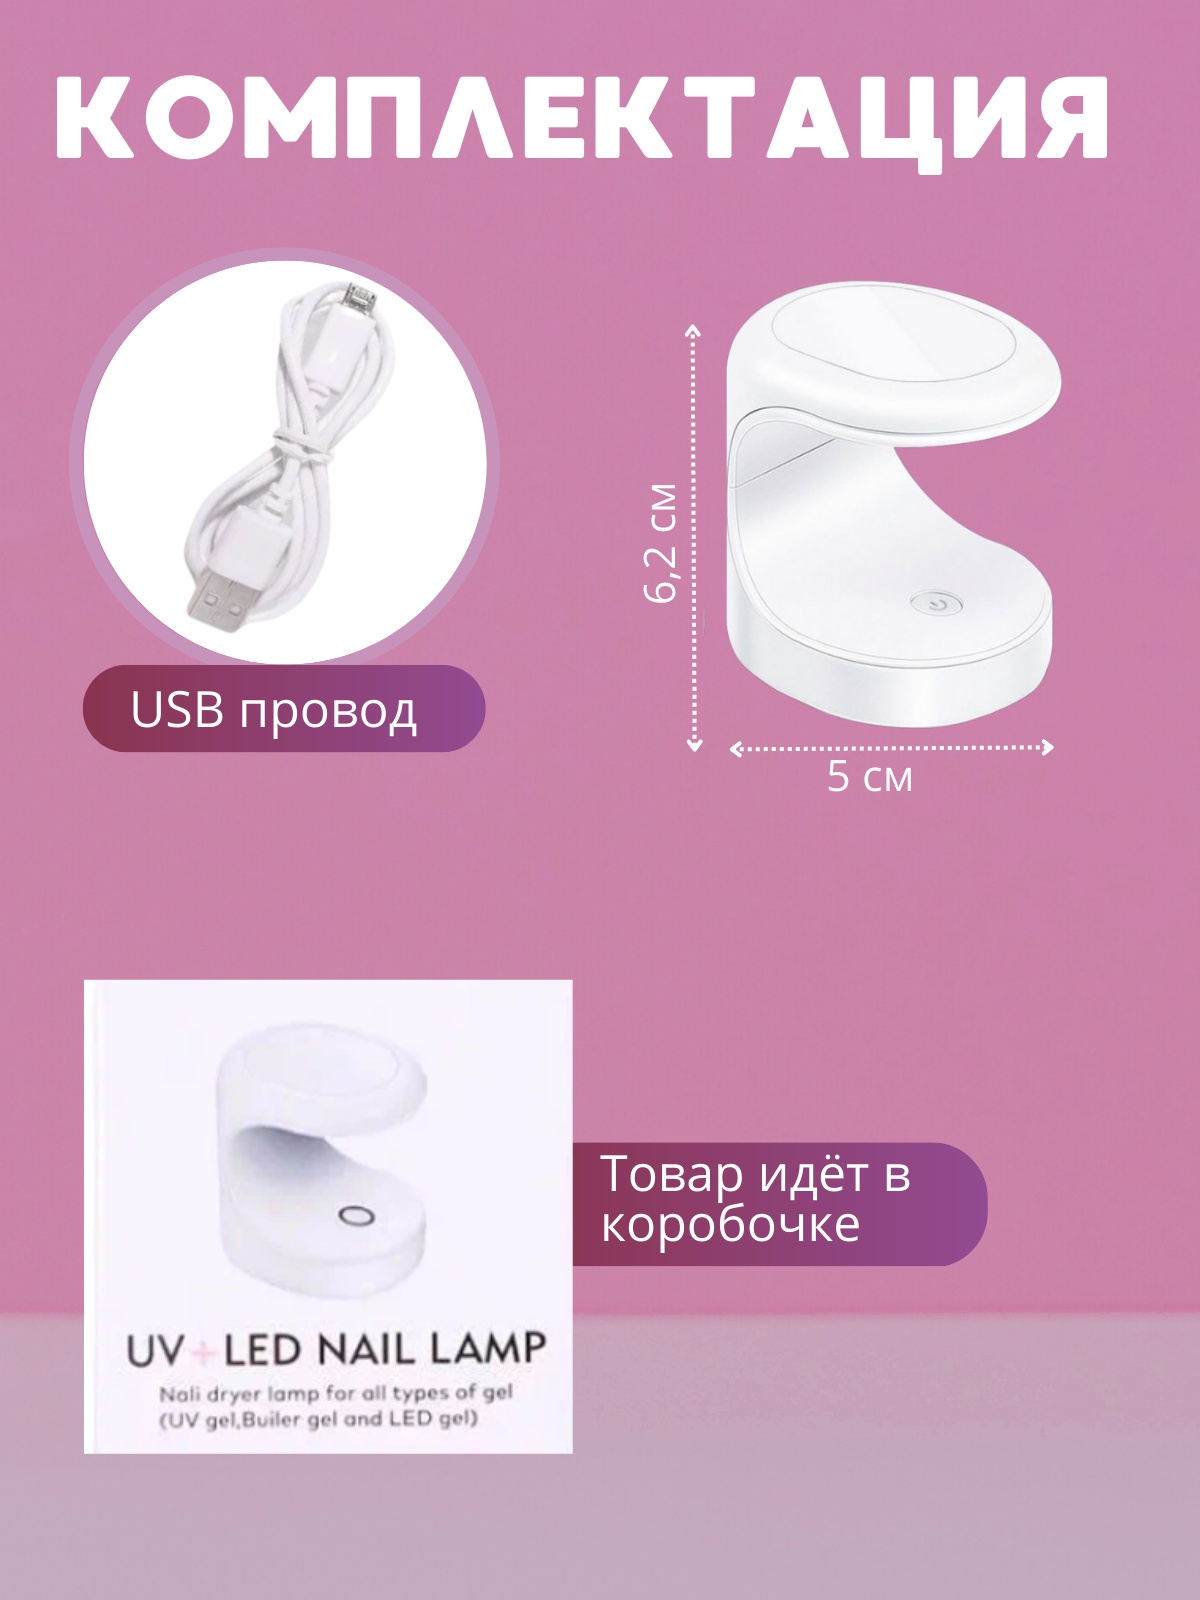 Описание Мини уф лед лампа для маникюра, led лампа сушилка для наращивания ногтей